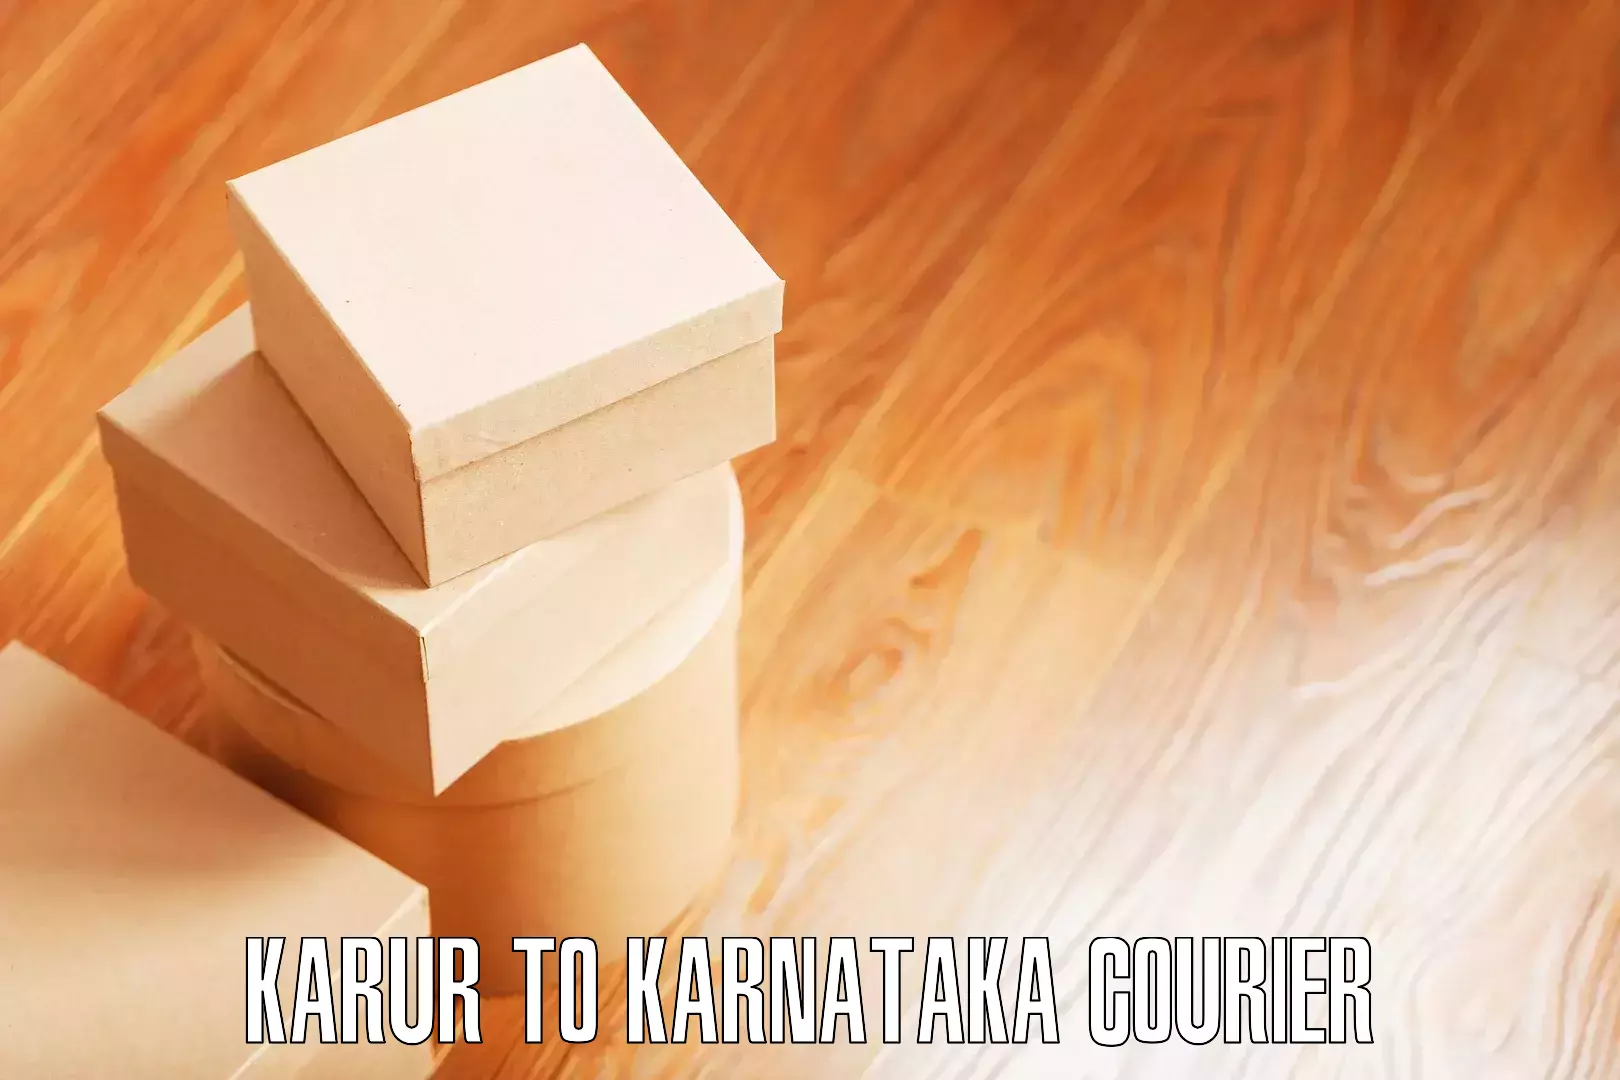 Efficient moving company Karur to Kundapura